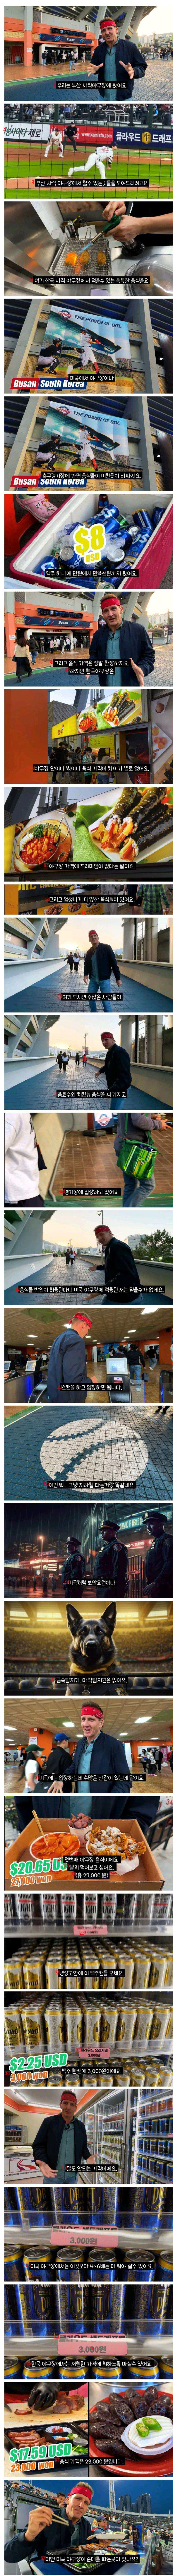 한국 야구장에 방문한 미국인의 후기